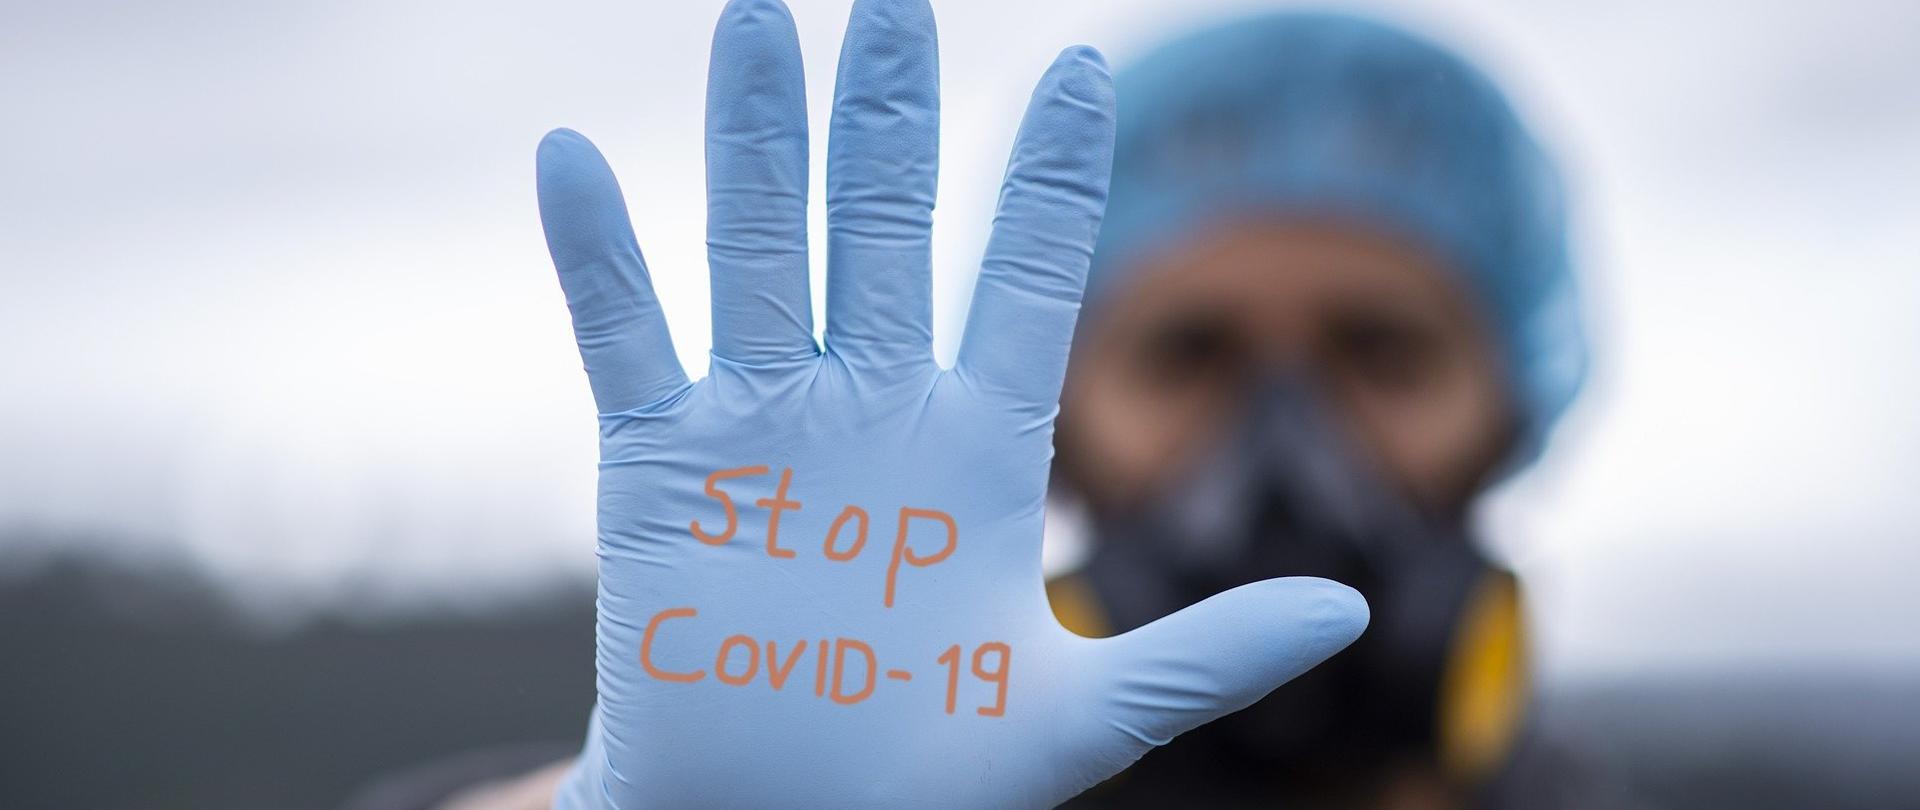 W tle człowiek w masce ochronnej i czepku, na pierwszym planie jego wyciągnięta dłoń w rękawiczce ochronnej z napisem Stop Covid-19